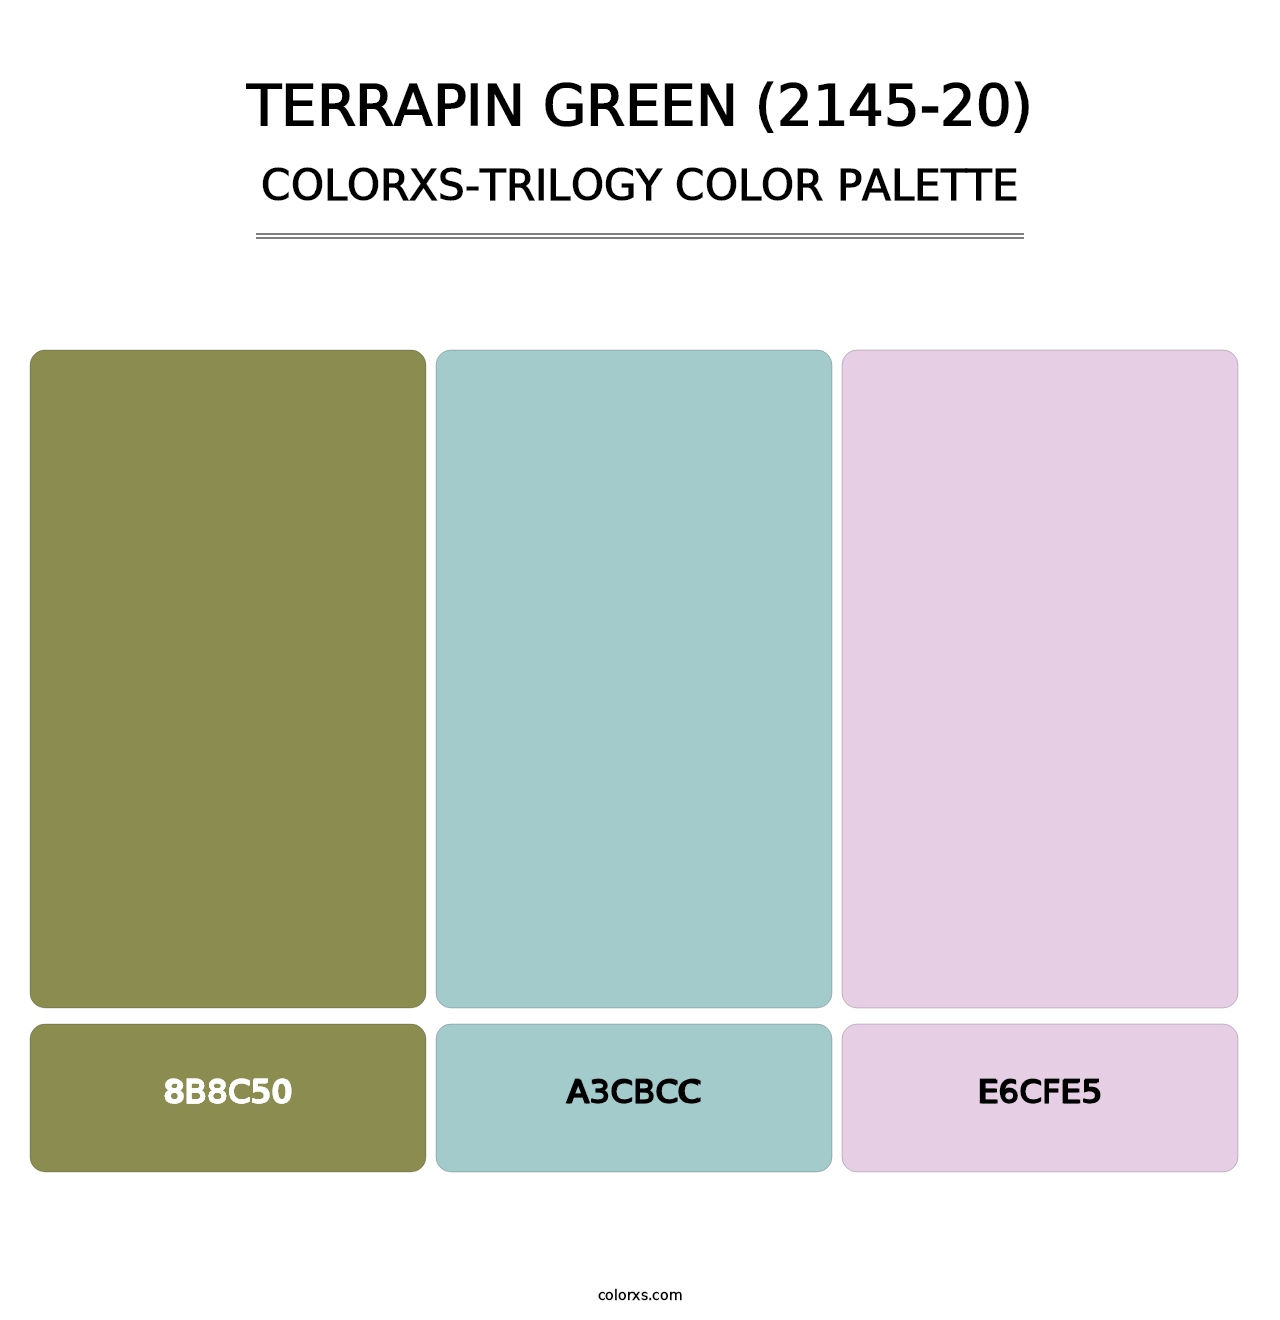 Terrapin Green (2145-20) - Colorxs Trilogy Palette